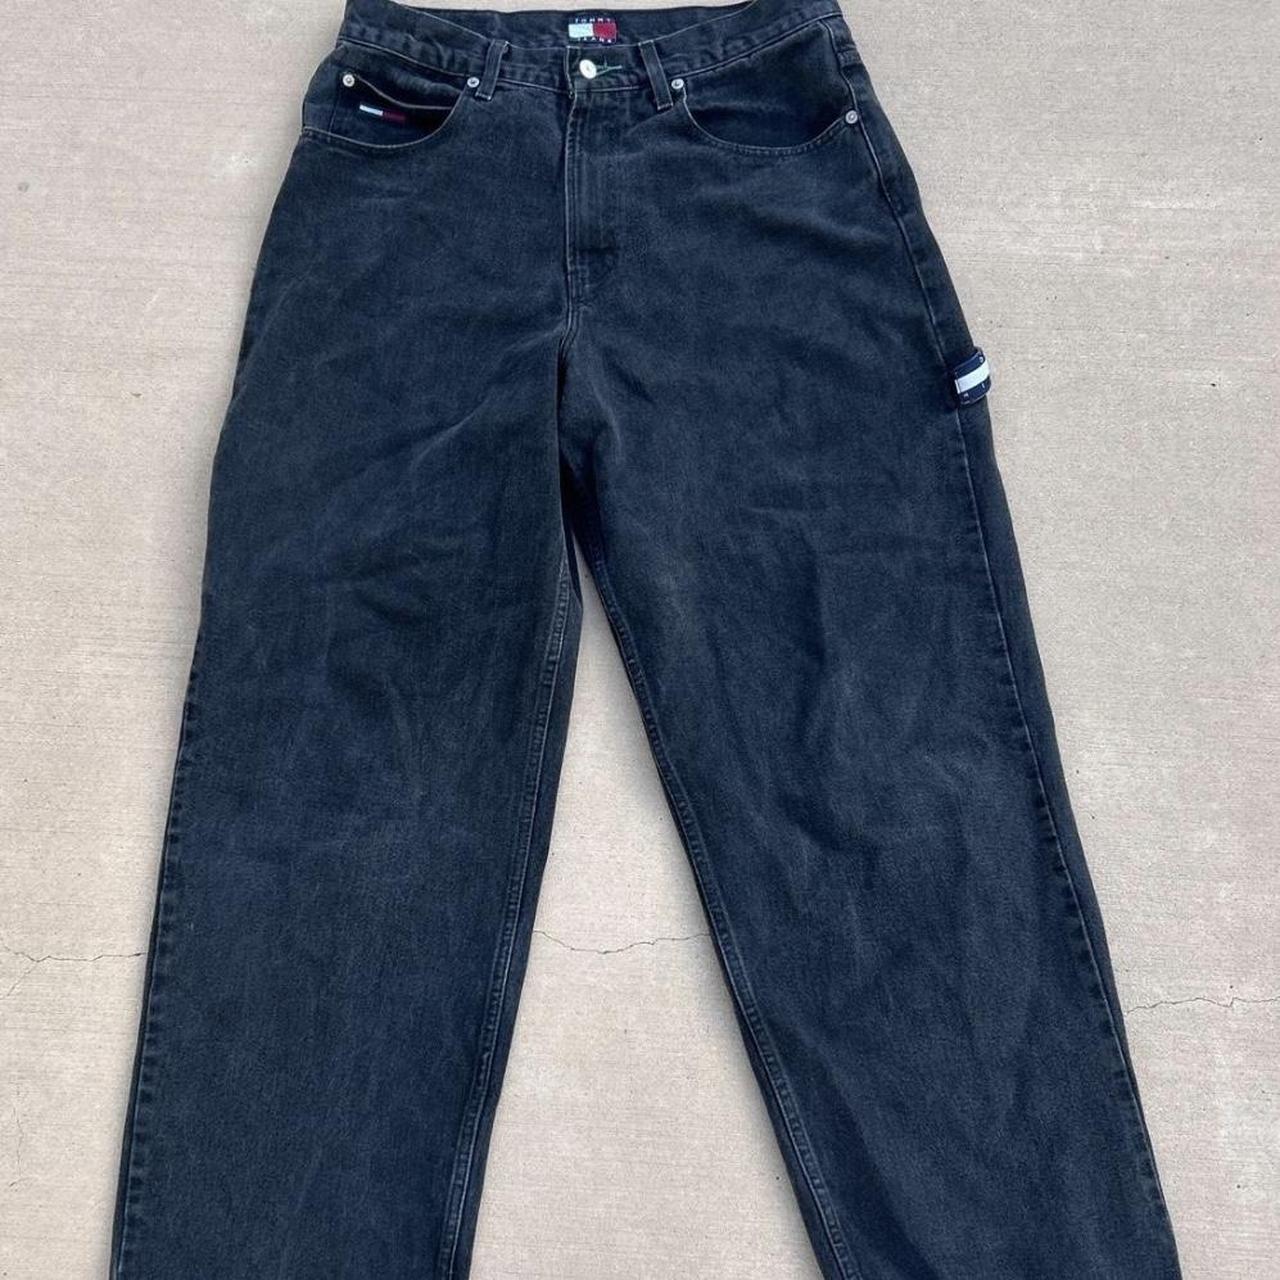 Vintage baggy Tommy Hilfiger carpenter jeans black... - Depop